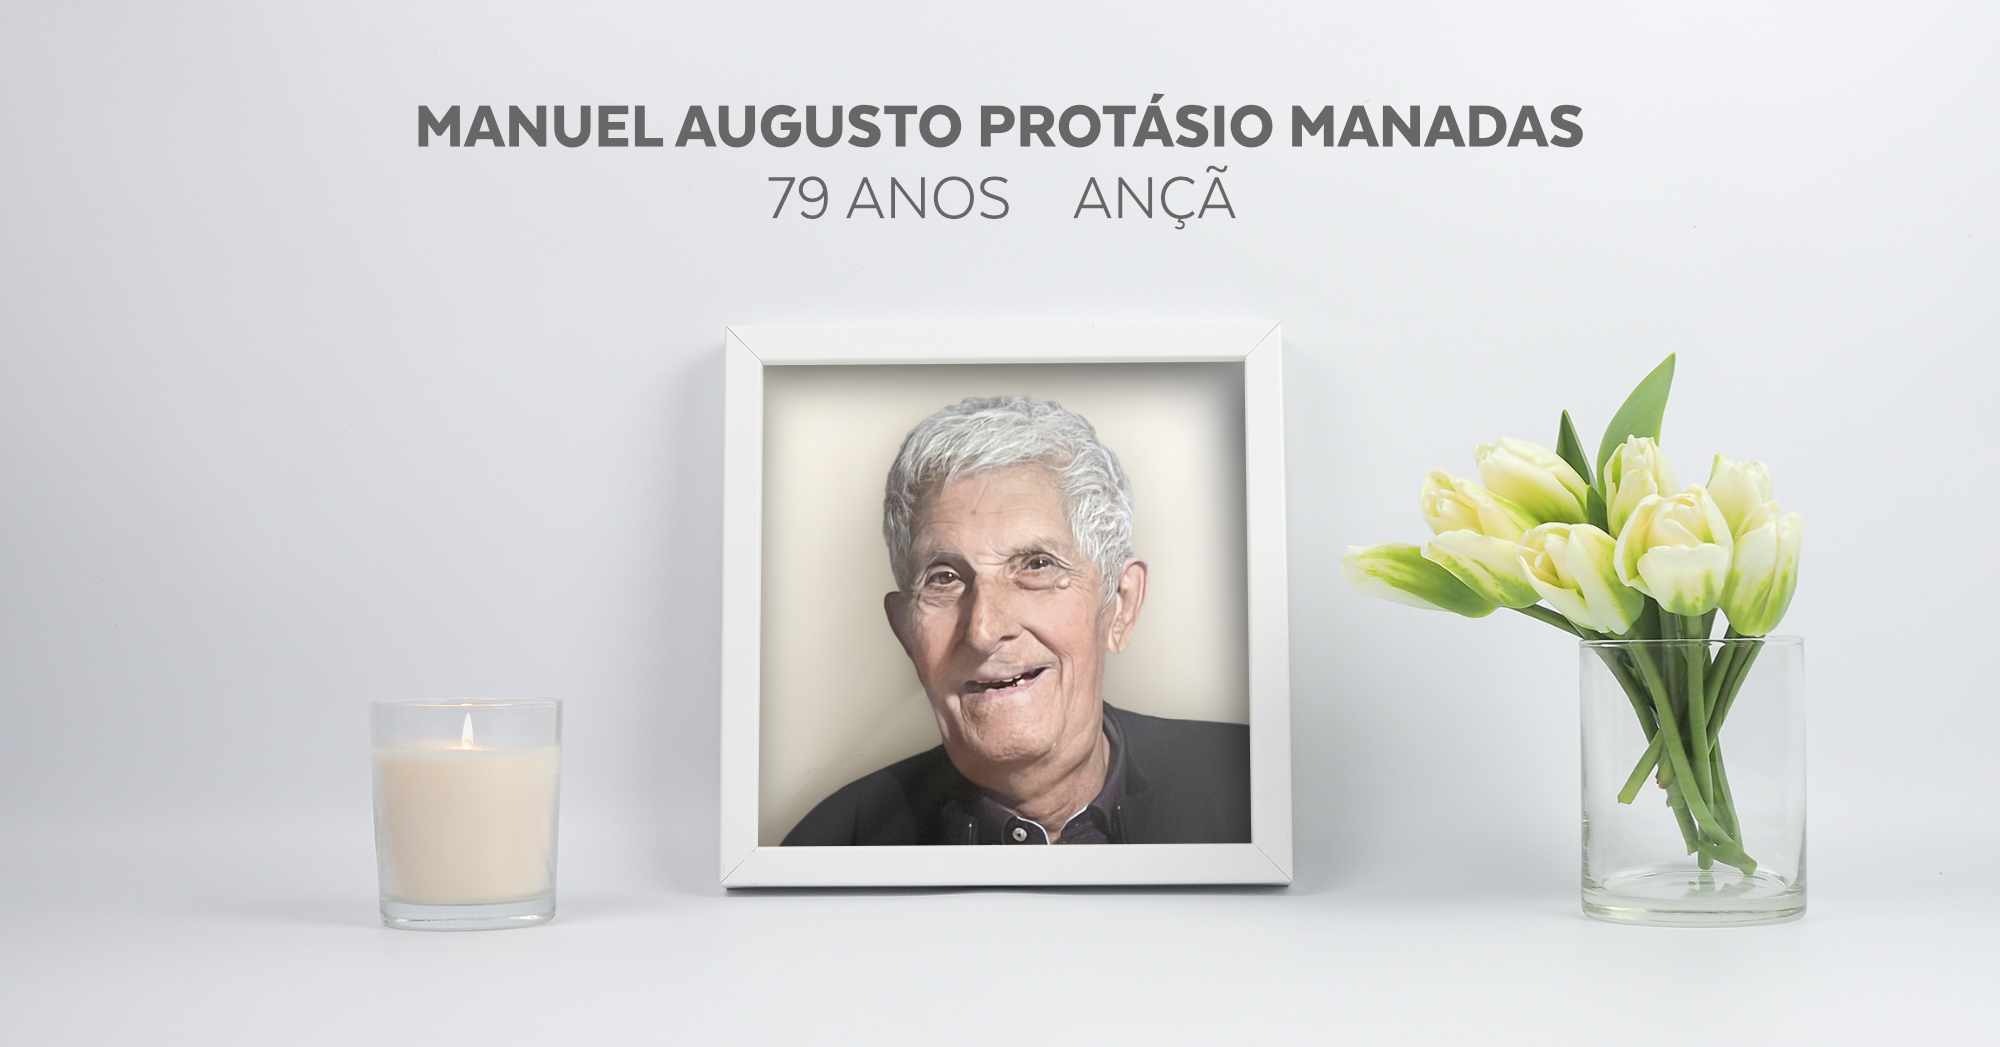 Manuel Augusto Protásio Manadas